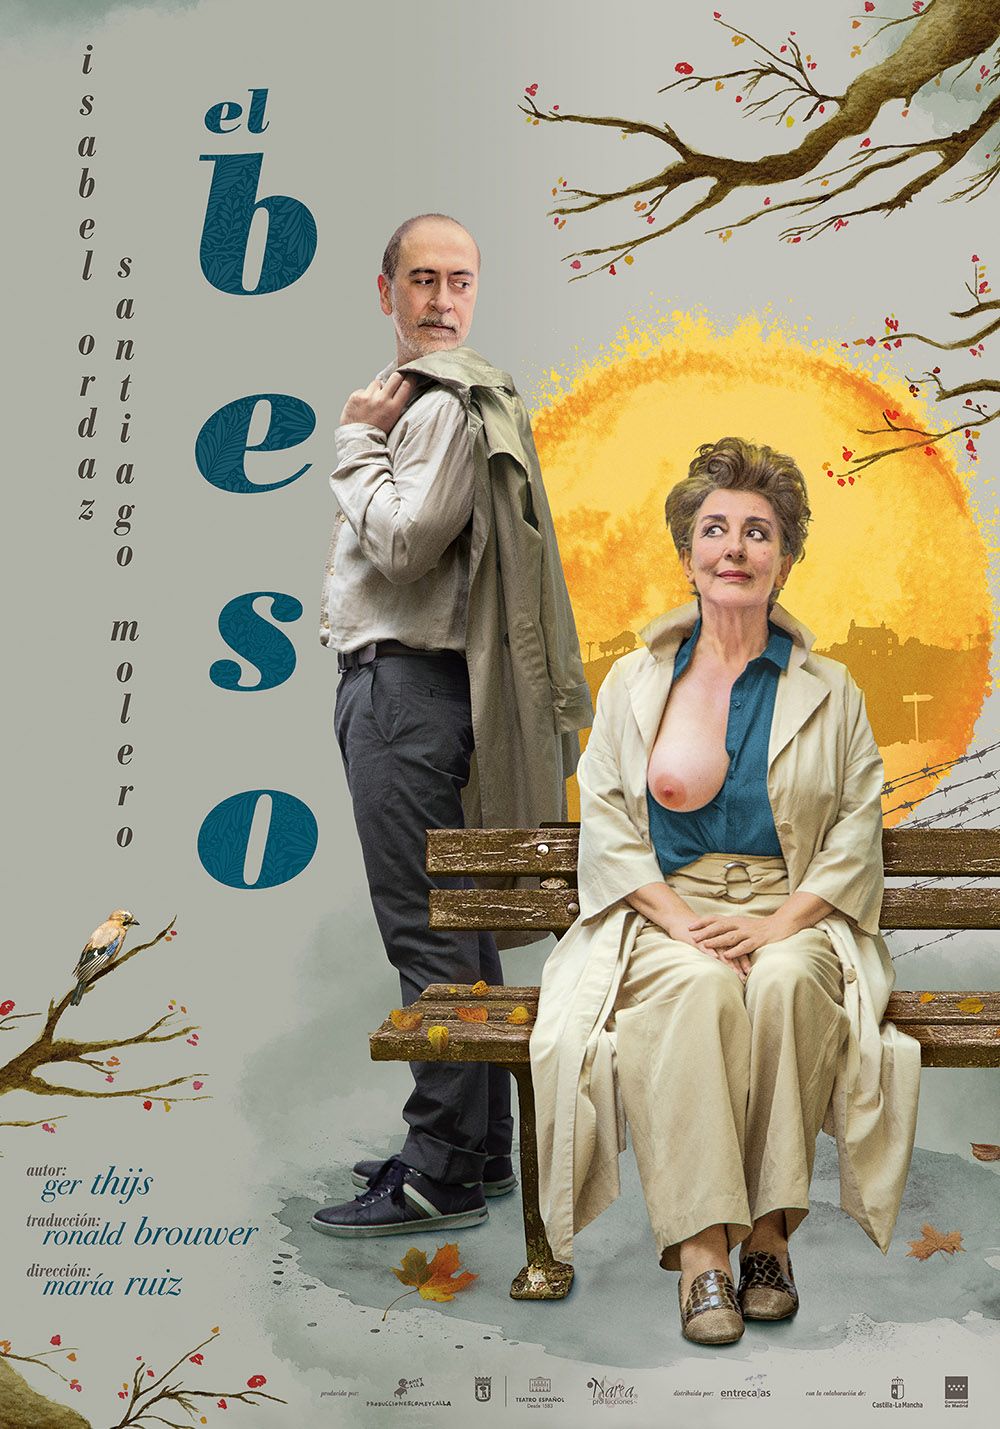 EL BESO en el Teatro Español